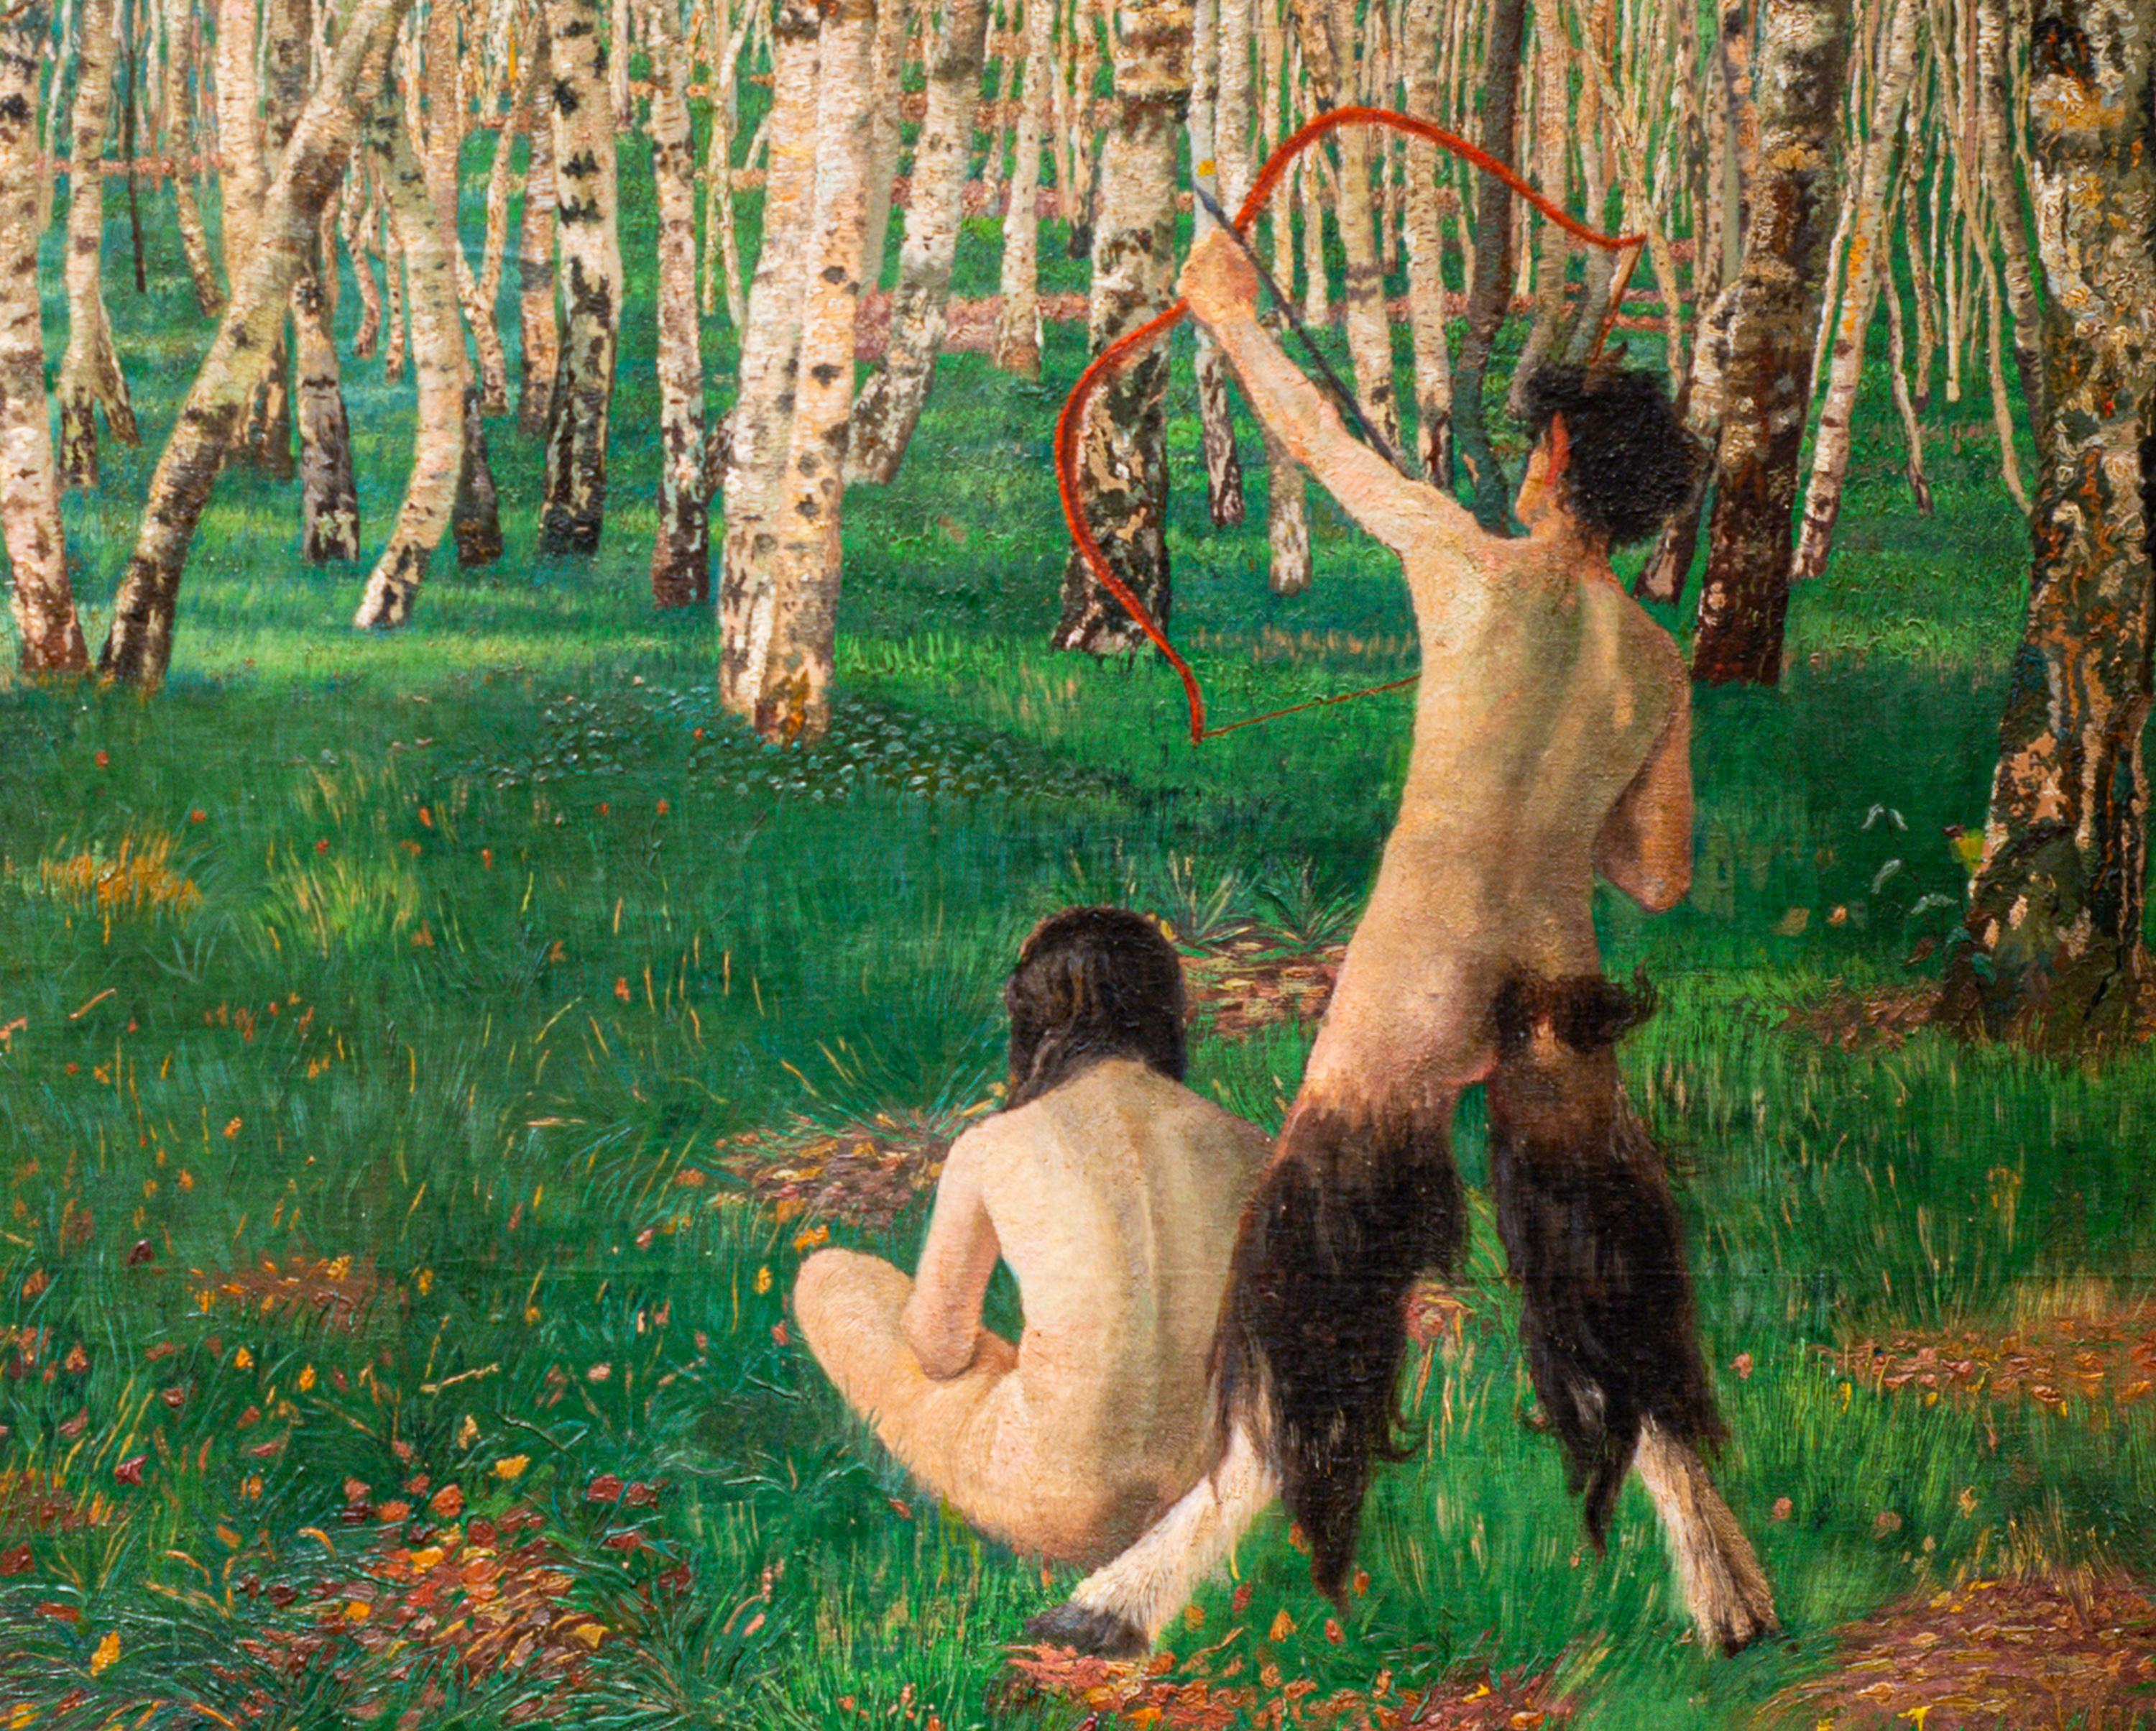 Jugendstil Landscape Painting Oil on Canvas Austrian Art Karl Mediz The Birch Forest, 1894